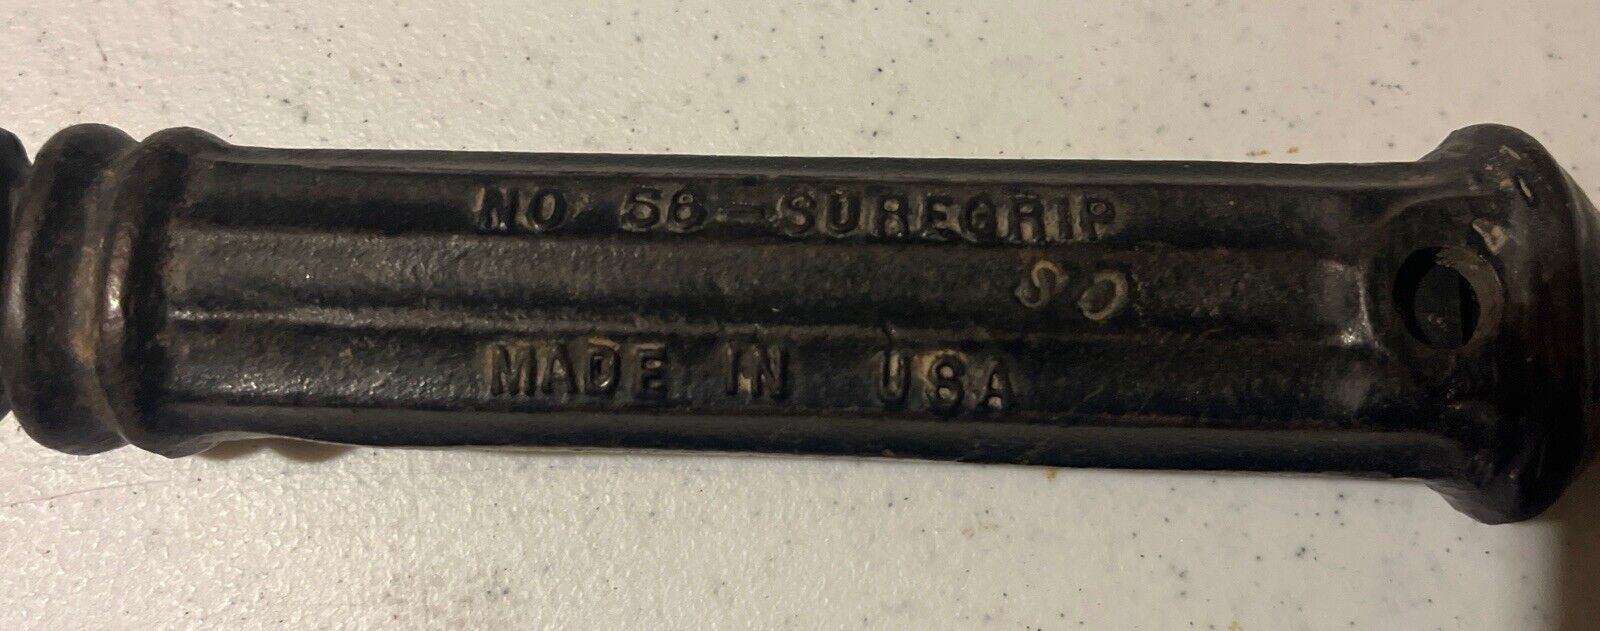 Vintage Crescent Bridgeport Suregrip No. 56 Slide Hammer Nail Puller Made In USA